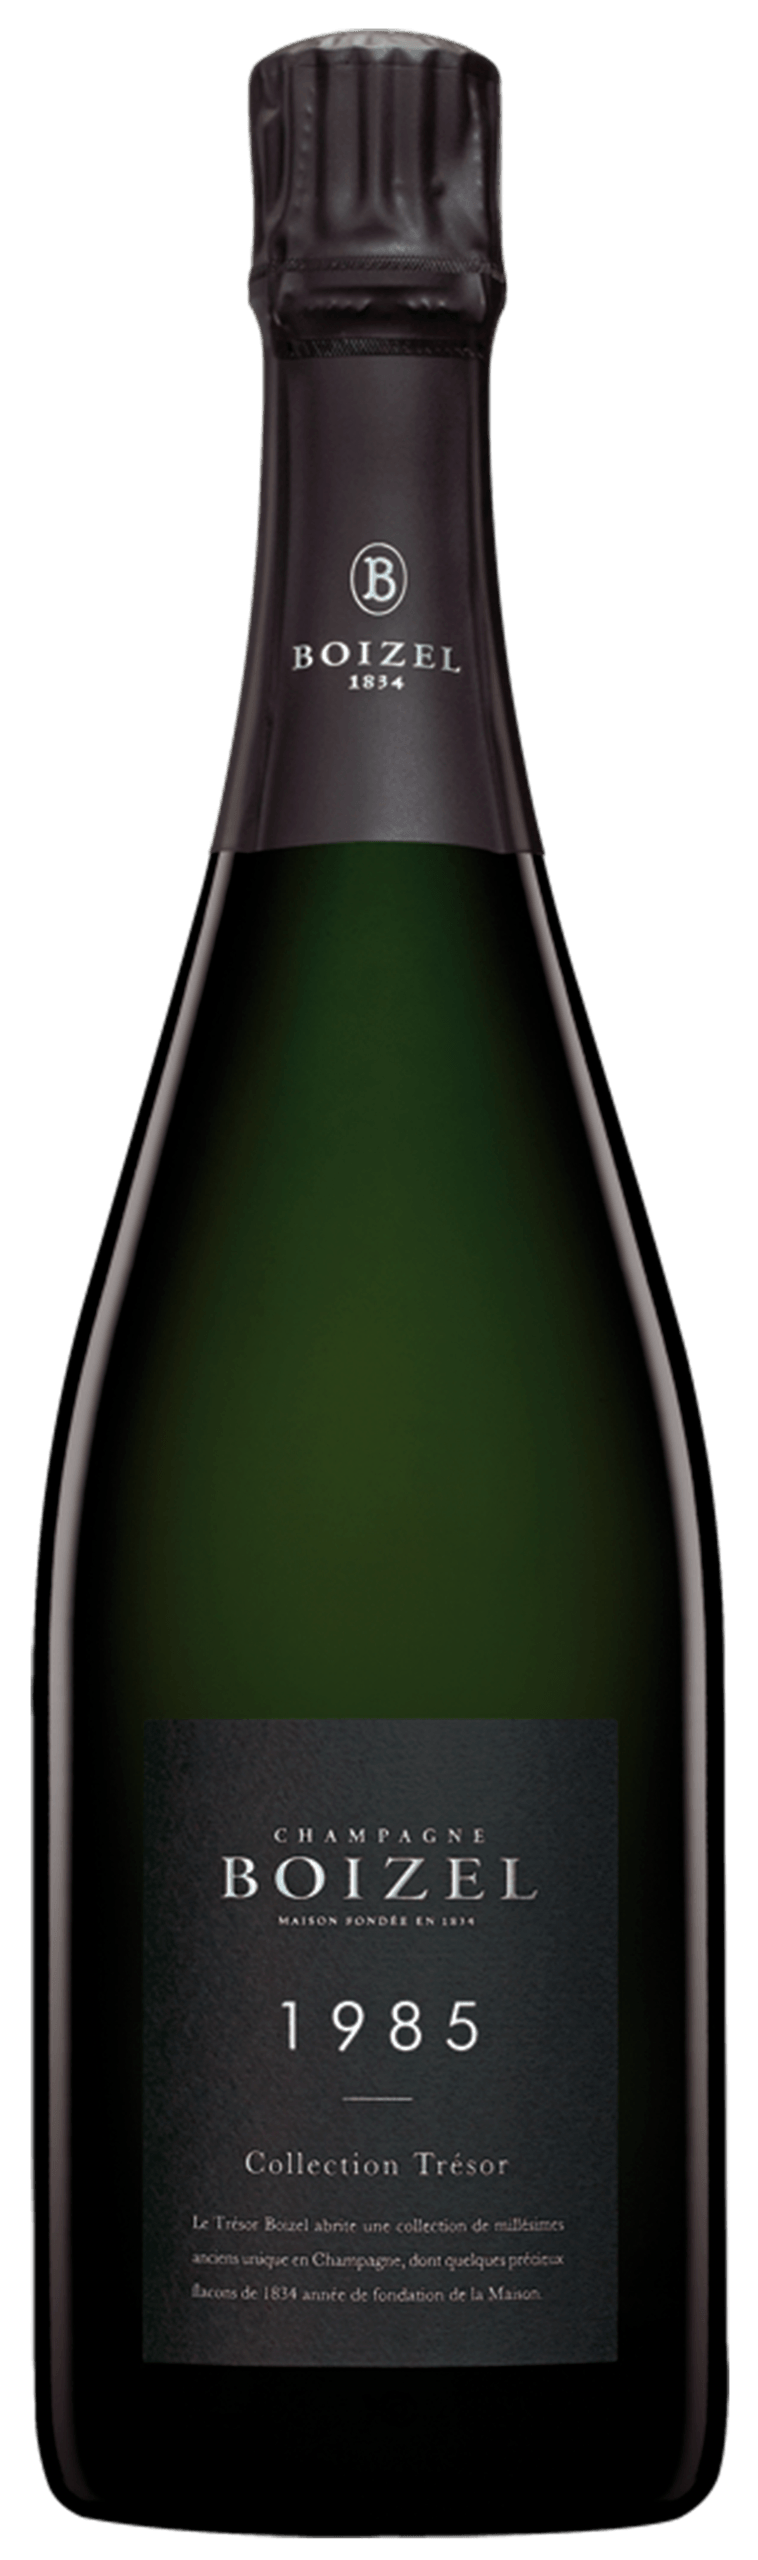 Champagne Boizel Collection Trésor 1985